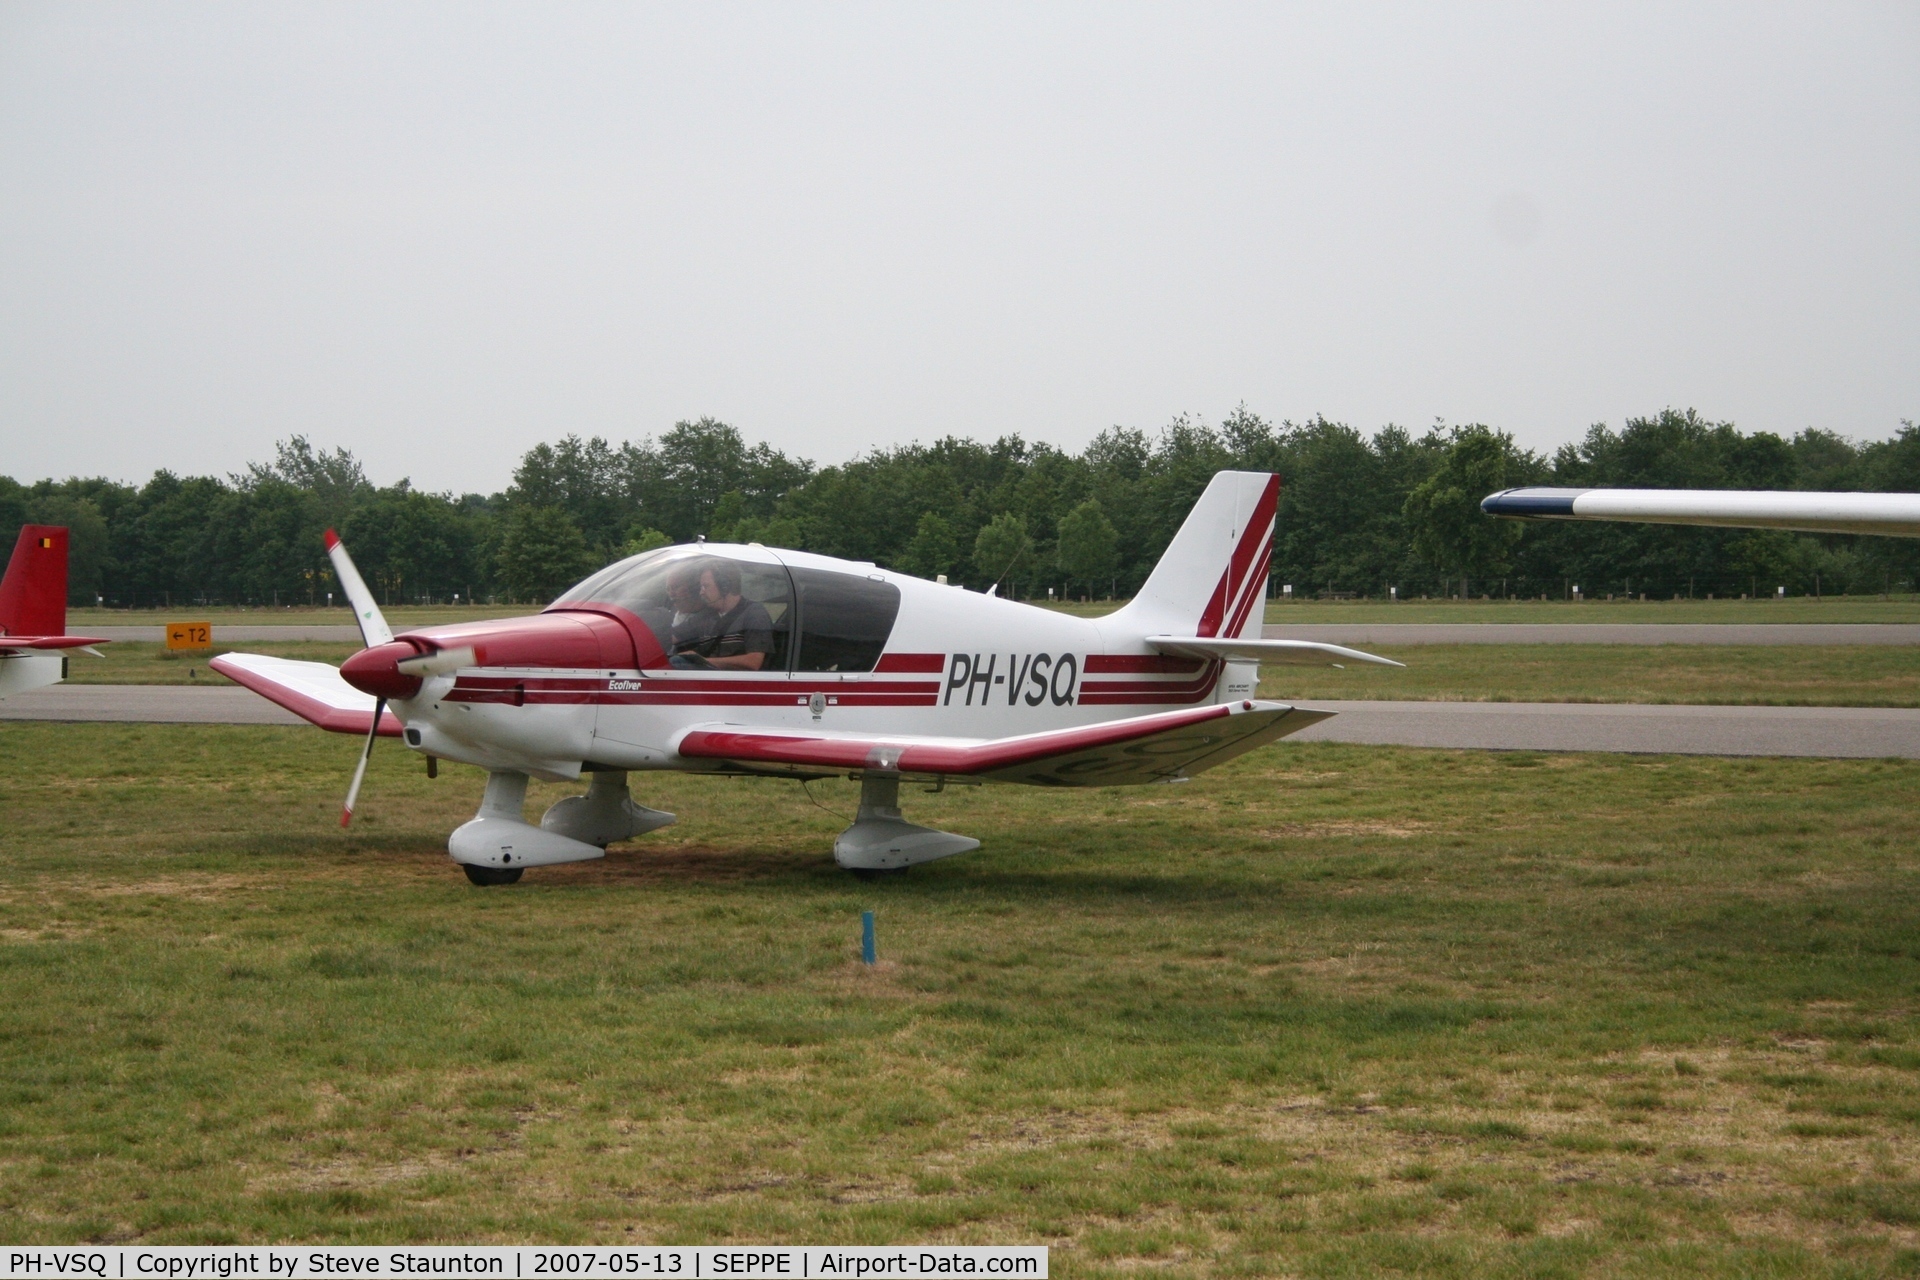 PH-VSQ, 2005 Robin DR-400-140B Major C/N 2581, Taken on a Aeroprint tour @ Seppe